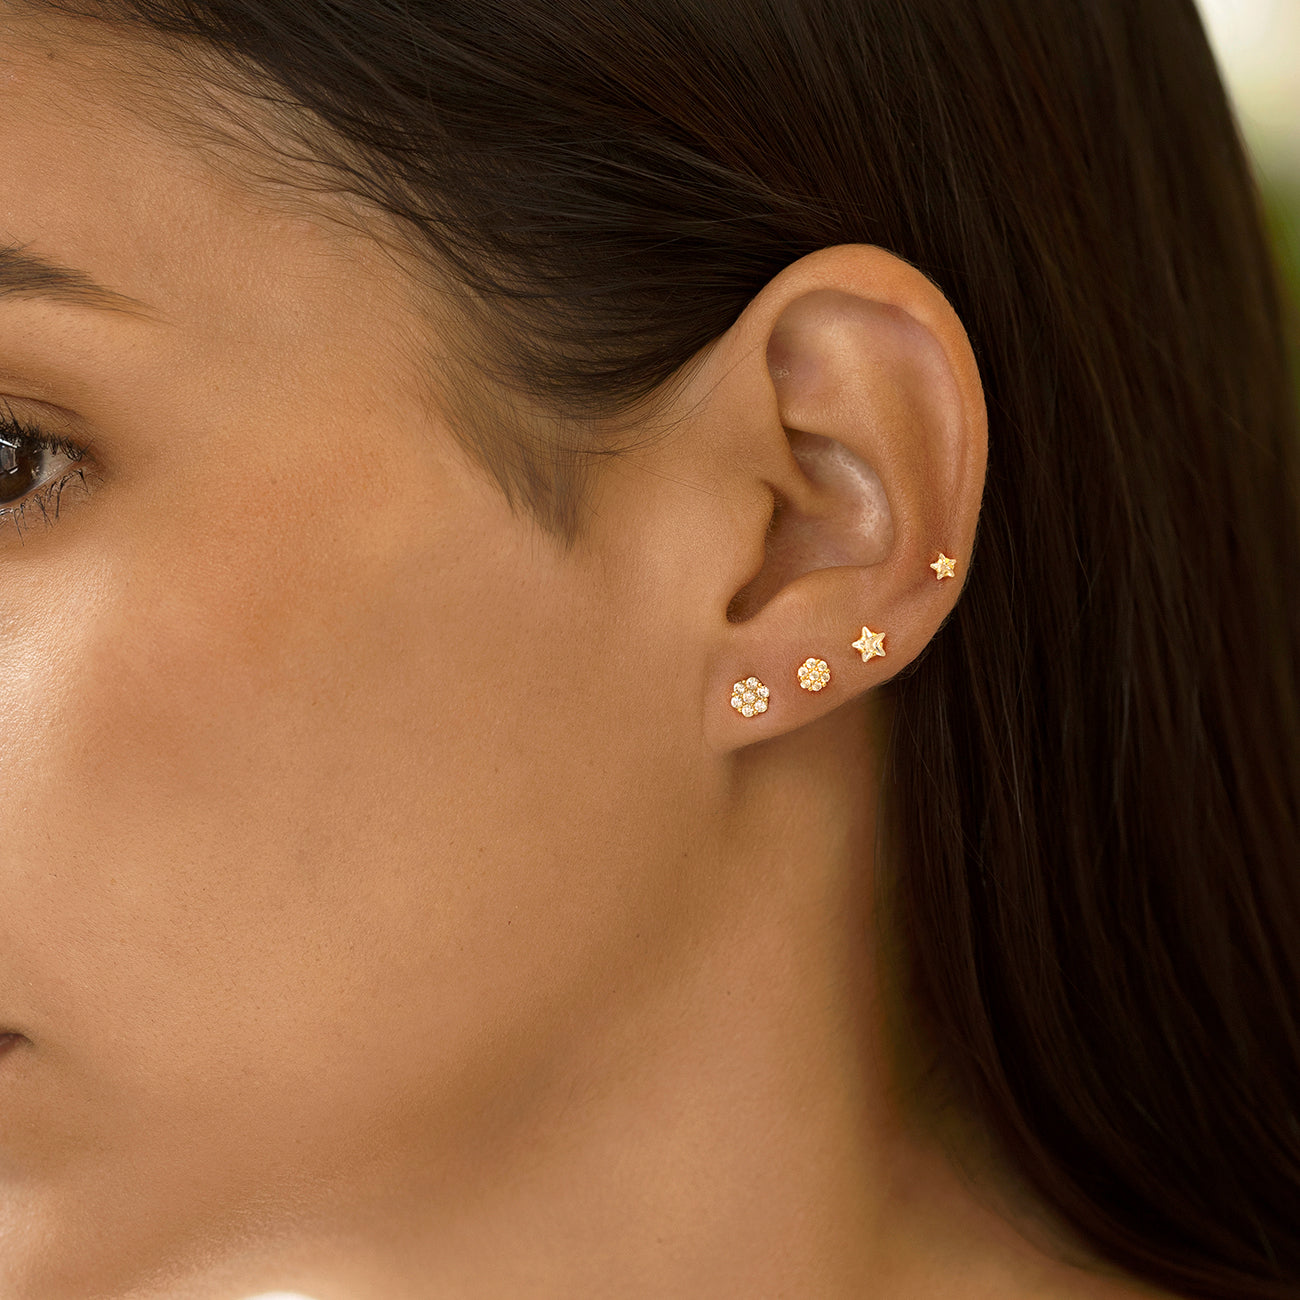 Tiny 3mm Silver Heart Stud Earrings - Studio Jewellery US